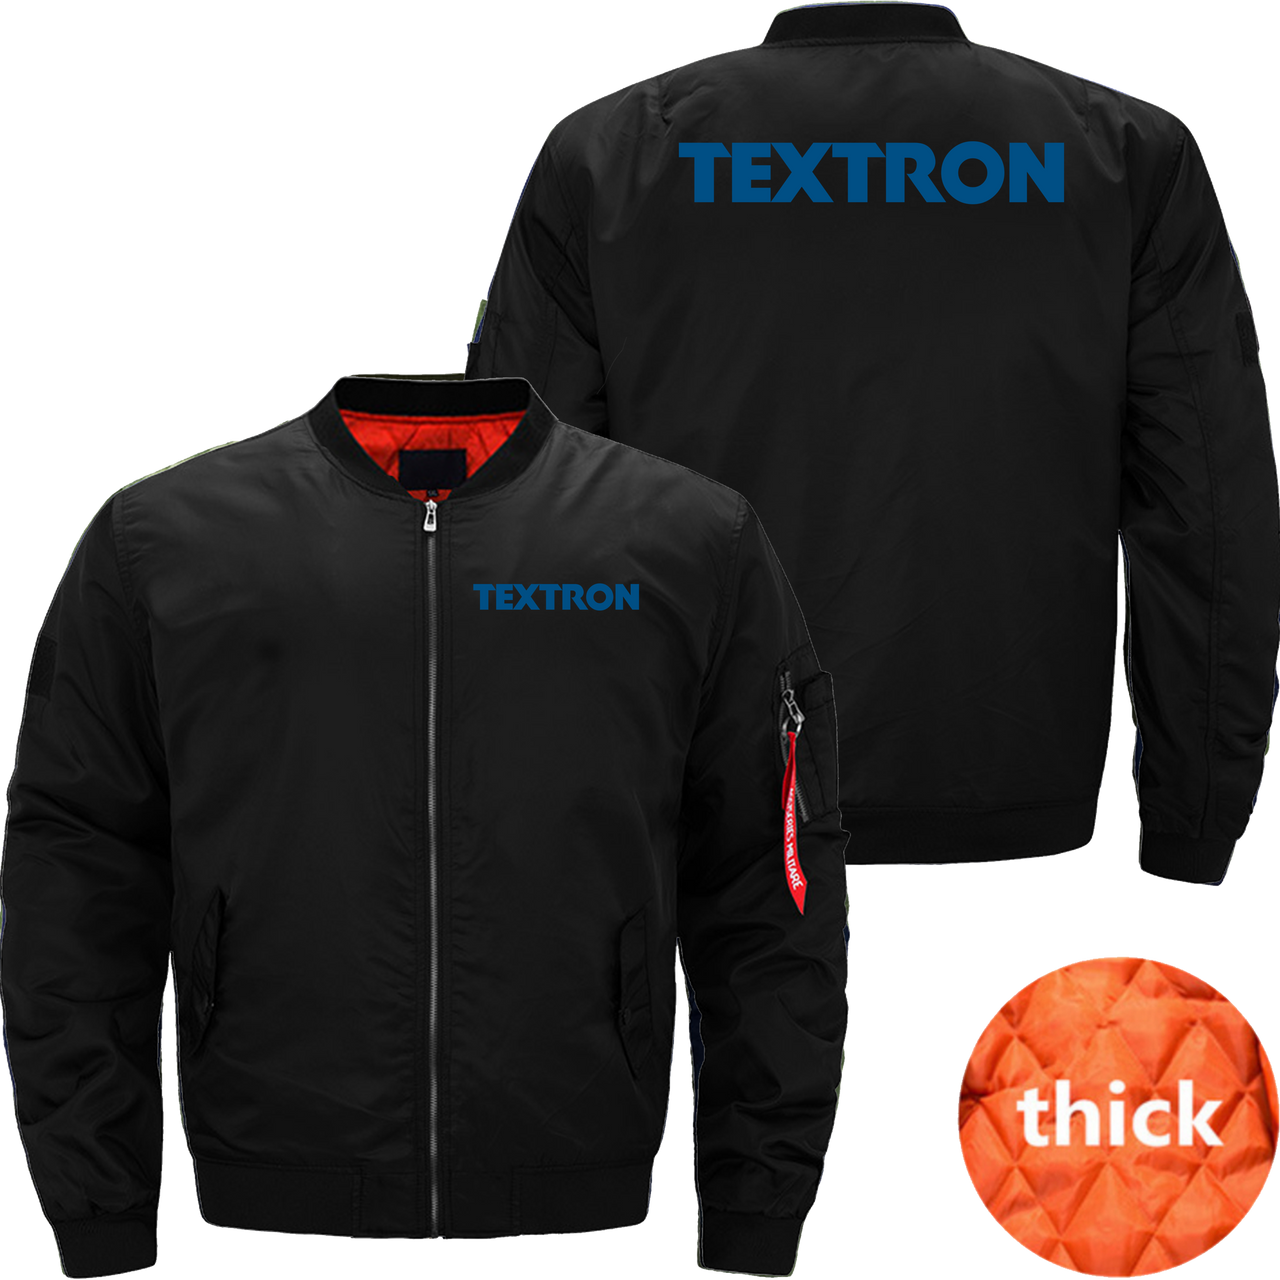 Textron Jacket